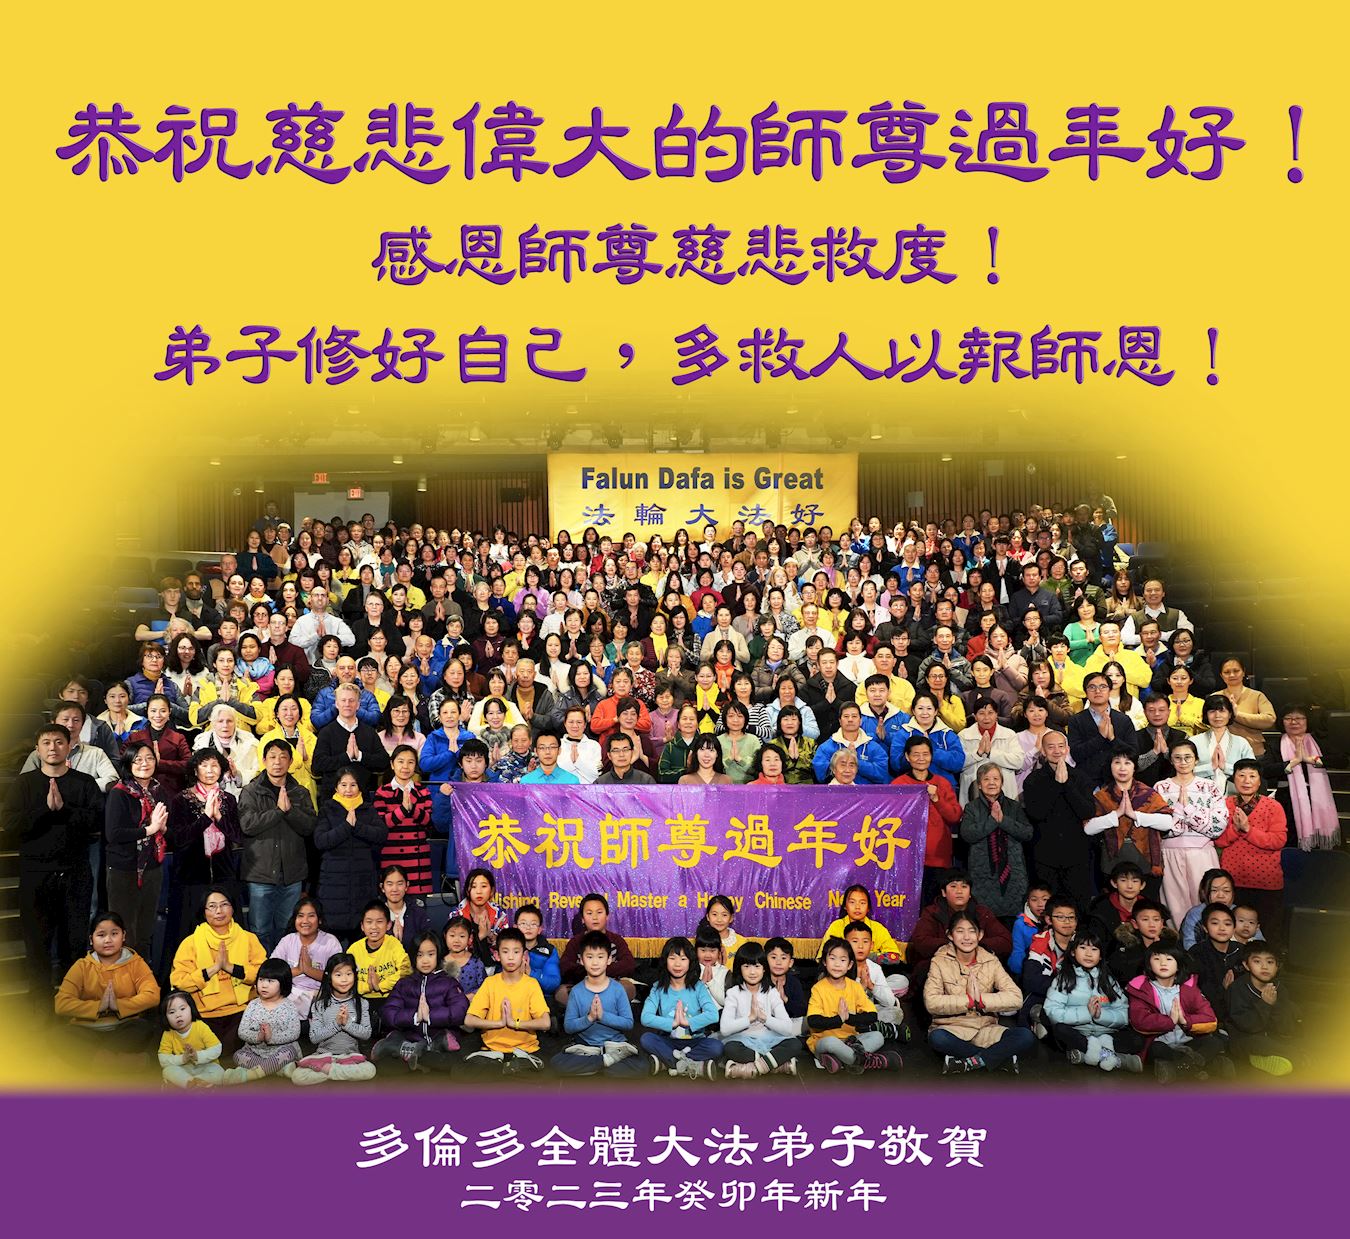 Image for article Canada : Les pratiquants de Dafa souhaitent à Maître Li un bon Nouvel An chinois et lui expriment leur plus grande gratitude